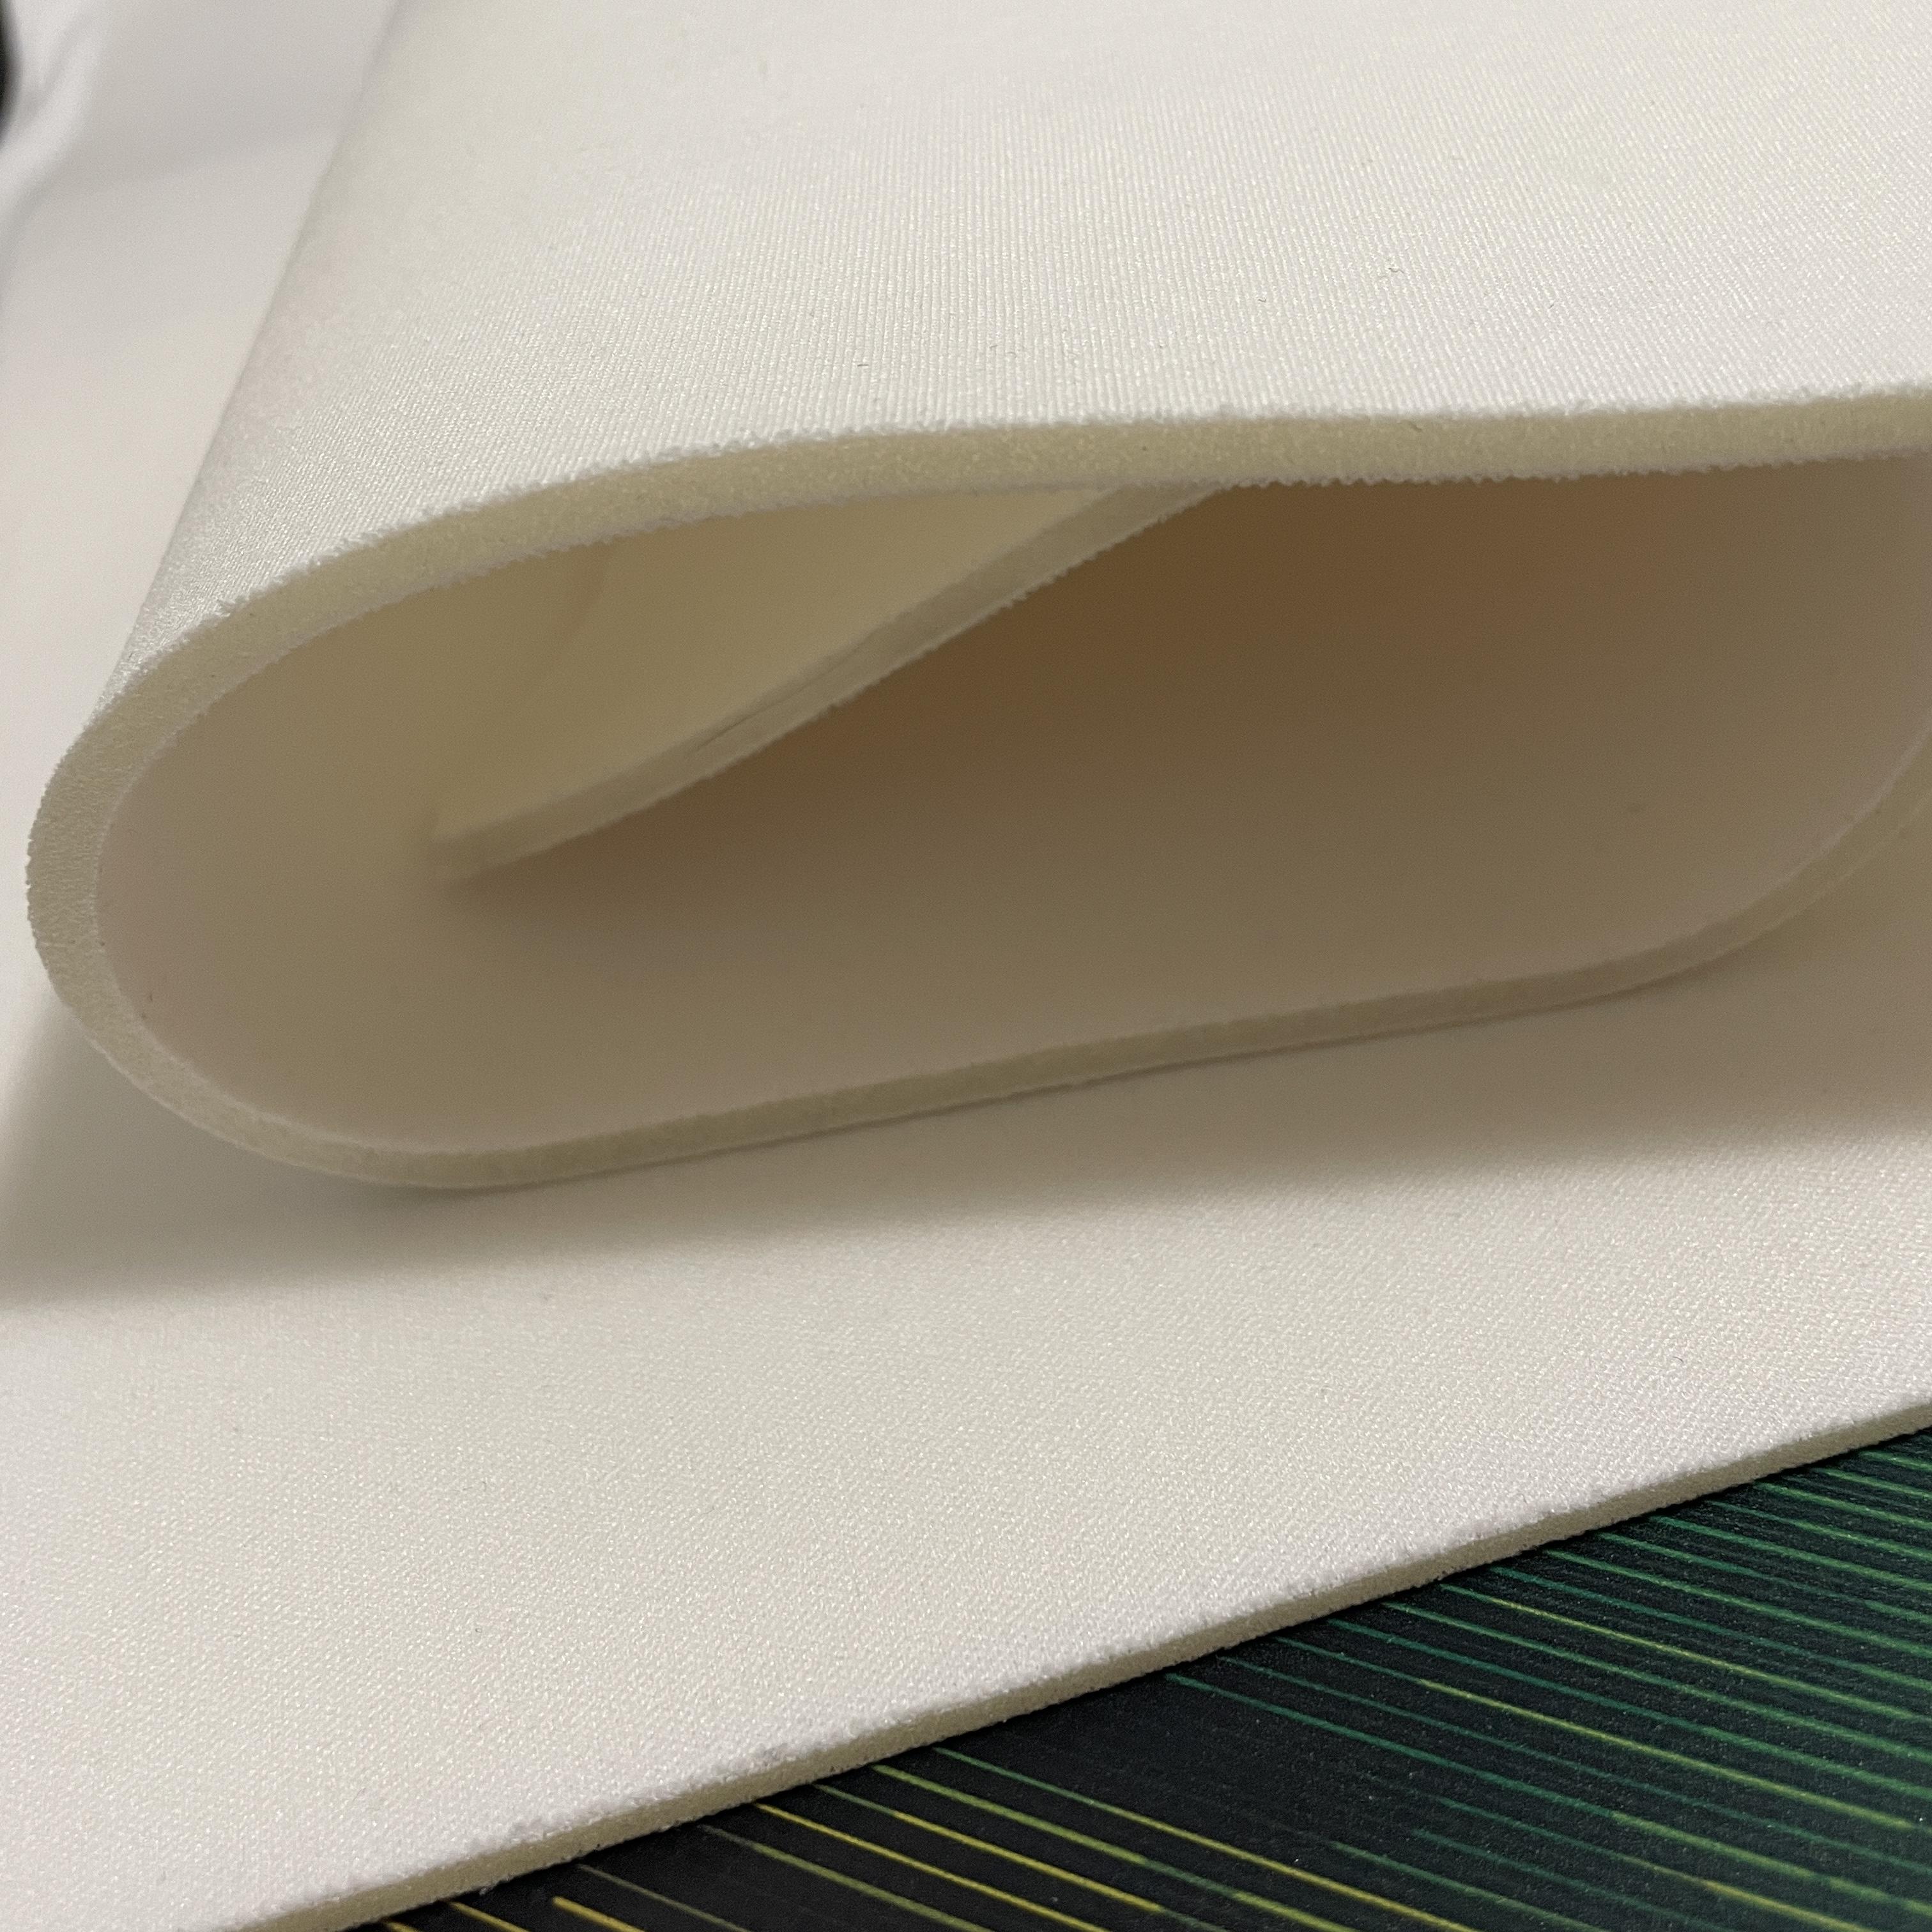 Bra Foam Padding Fabric 375gsm - OFF-WHITE - 3.8mm - Cut & Sew - Polyester  - 75cm x 65cm, per piece (seconds)